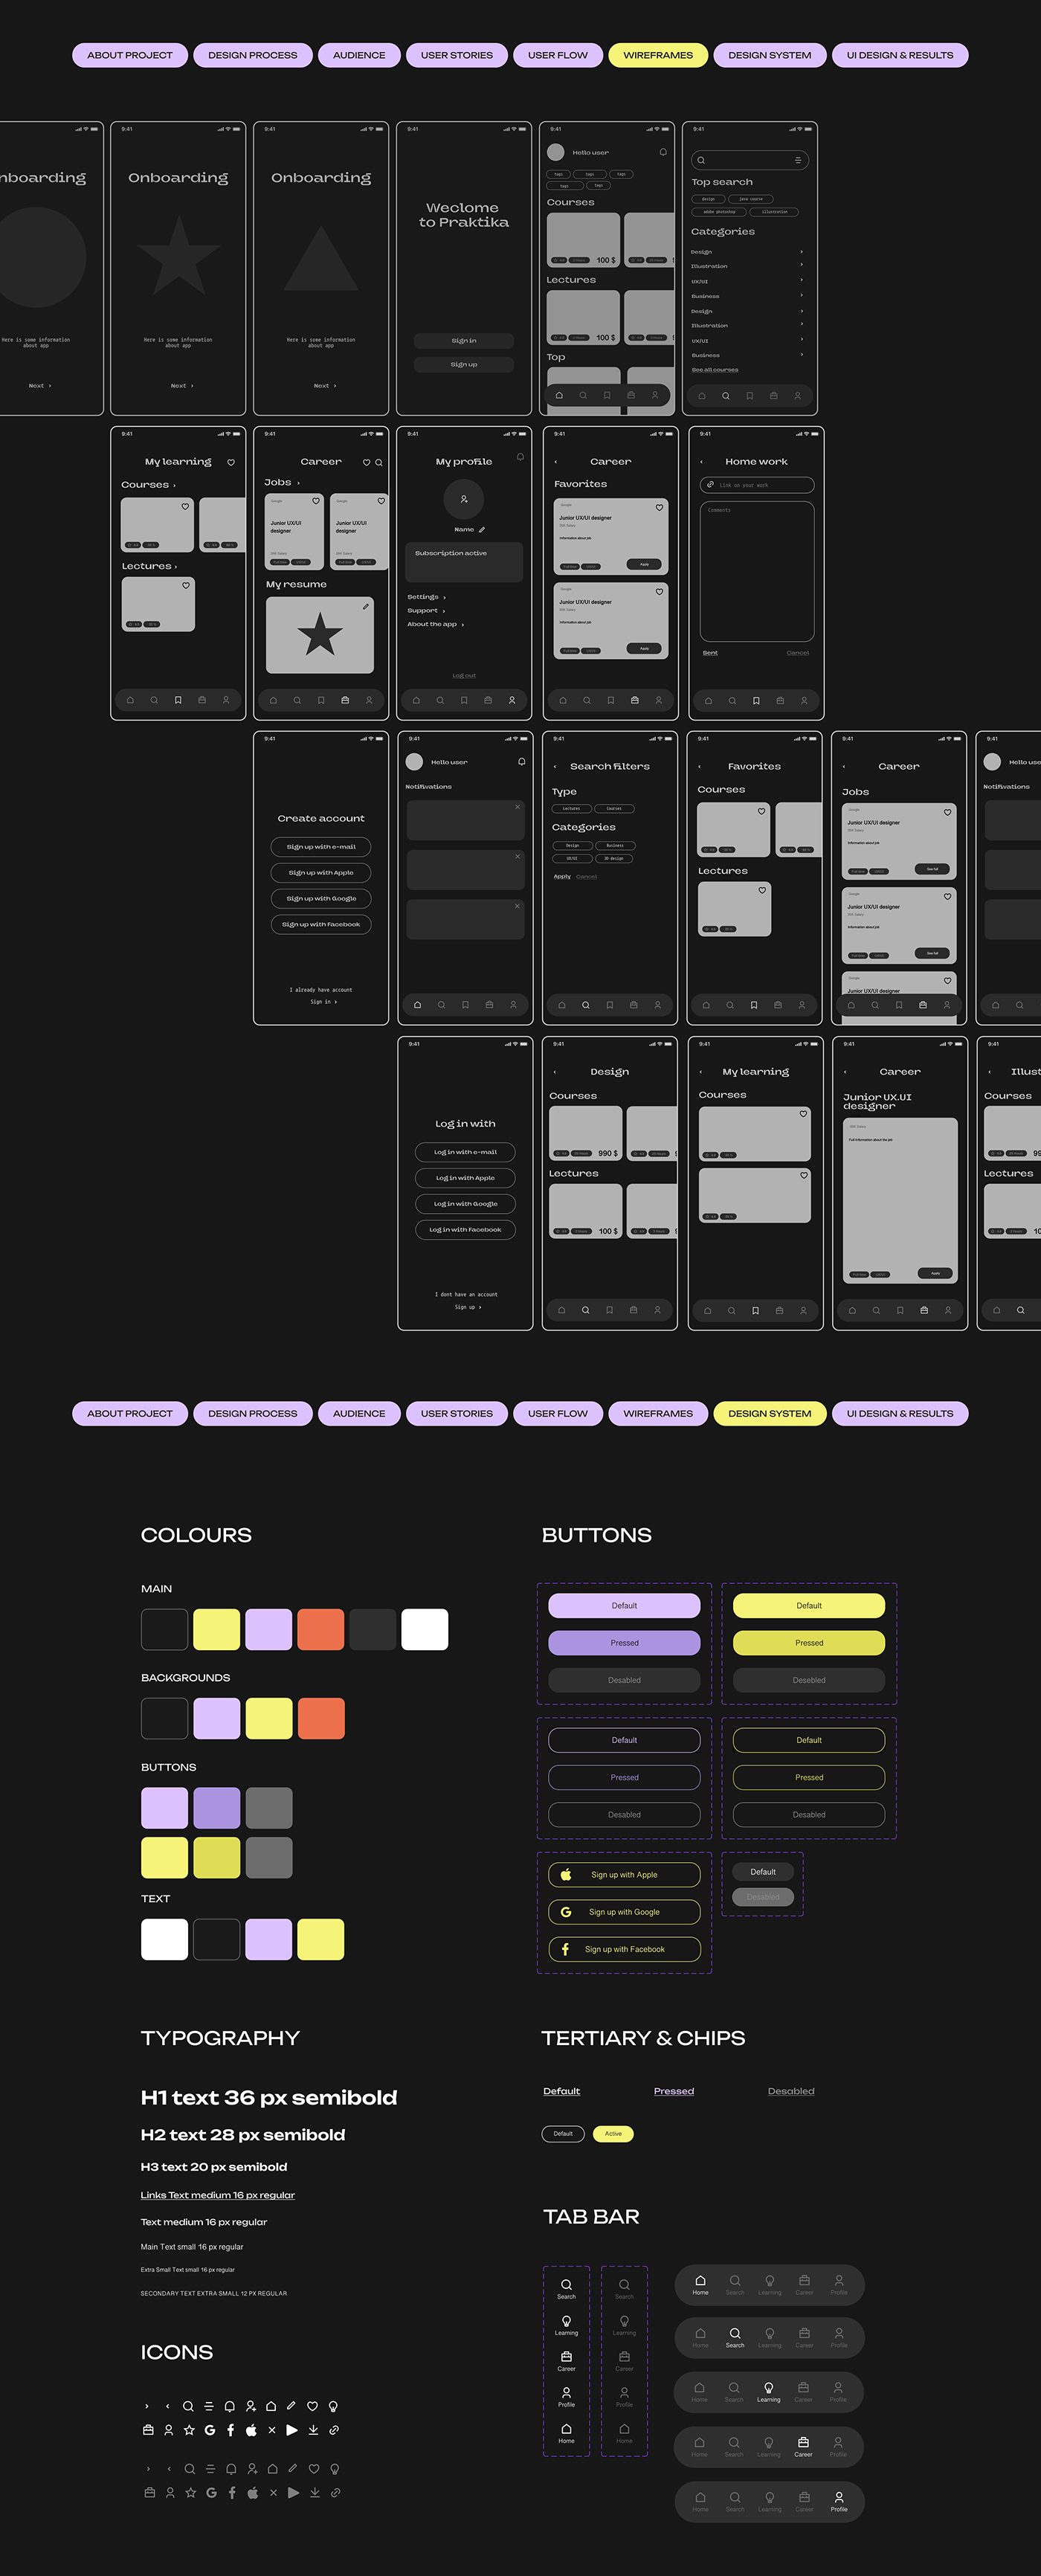 ux ui design user interface Mobile app Figma UI/UX app design user experience Interface graphic design 